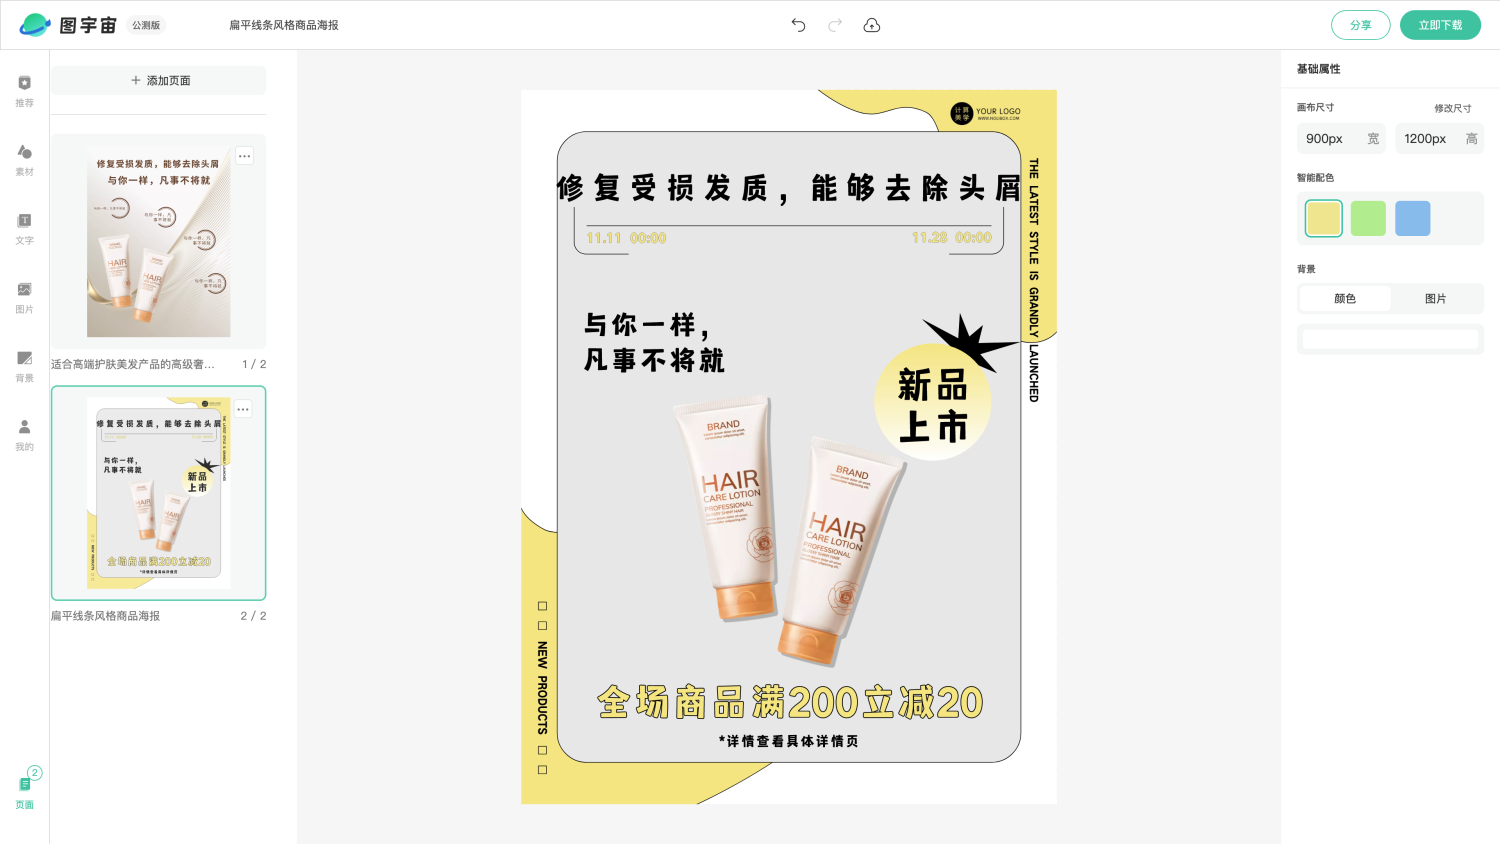 图宇宙-编辑器-适合高端护肤美发产品的高级奢华商品海报